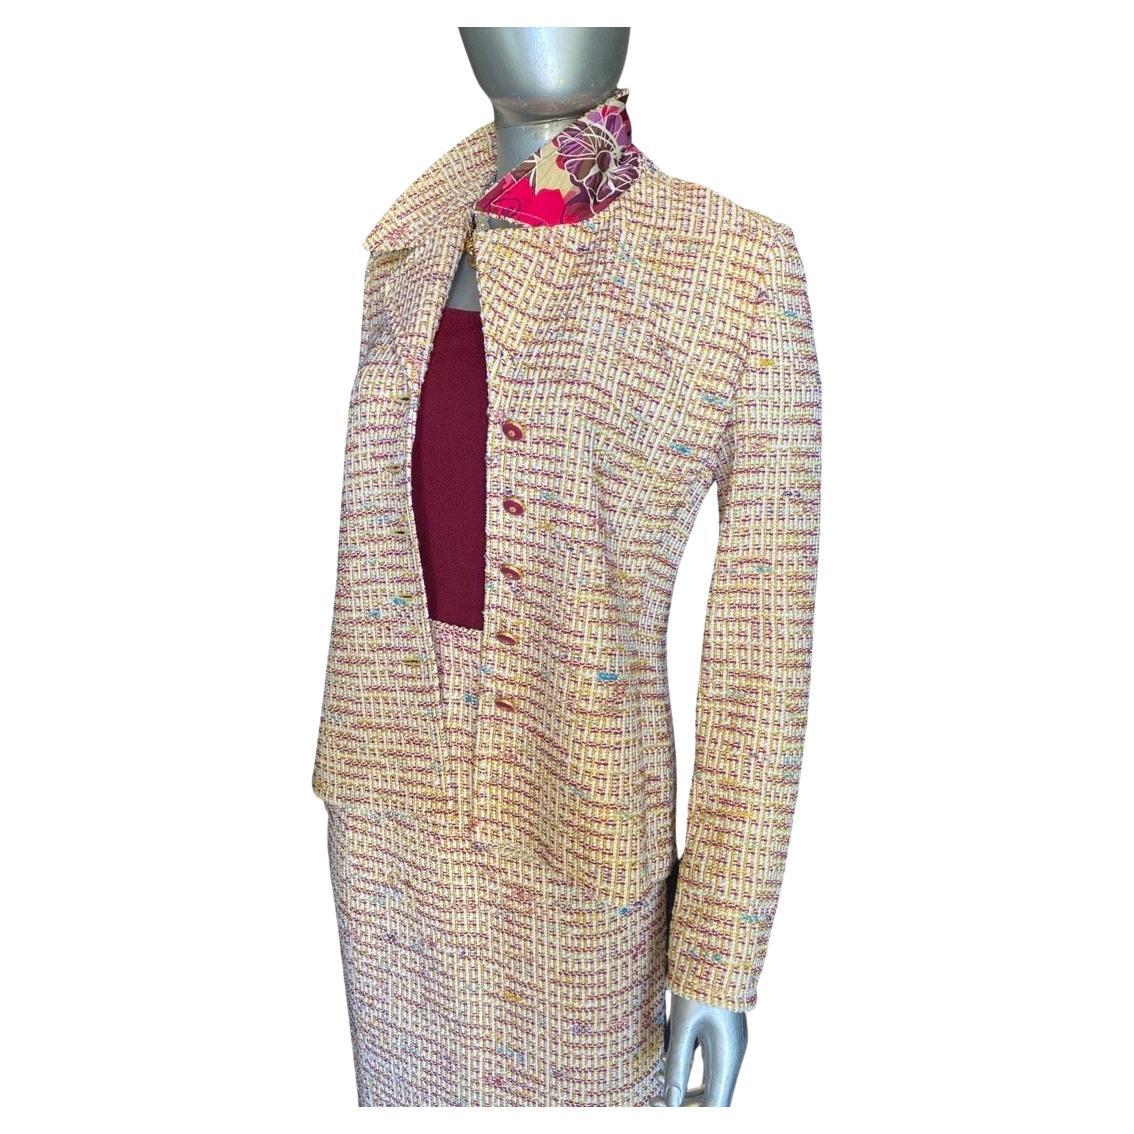 Ein schöner Anzug von St. John Collection'S. Collection'S ist die High-End-Abteilung, die ausschließlich aus europäischen Stoffen besteht. Denken Sie an Bouclé wie den berühmten französischen Designeranzug, aber in einem modernen Farbgestrick.